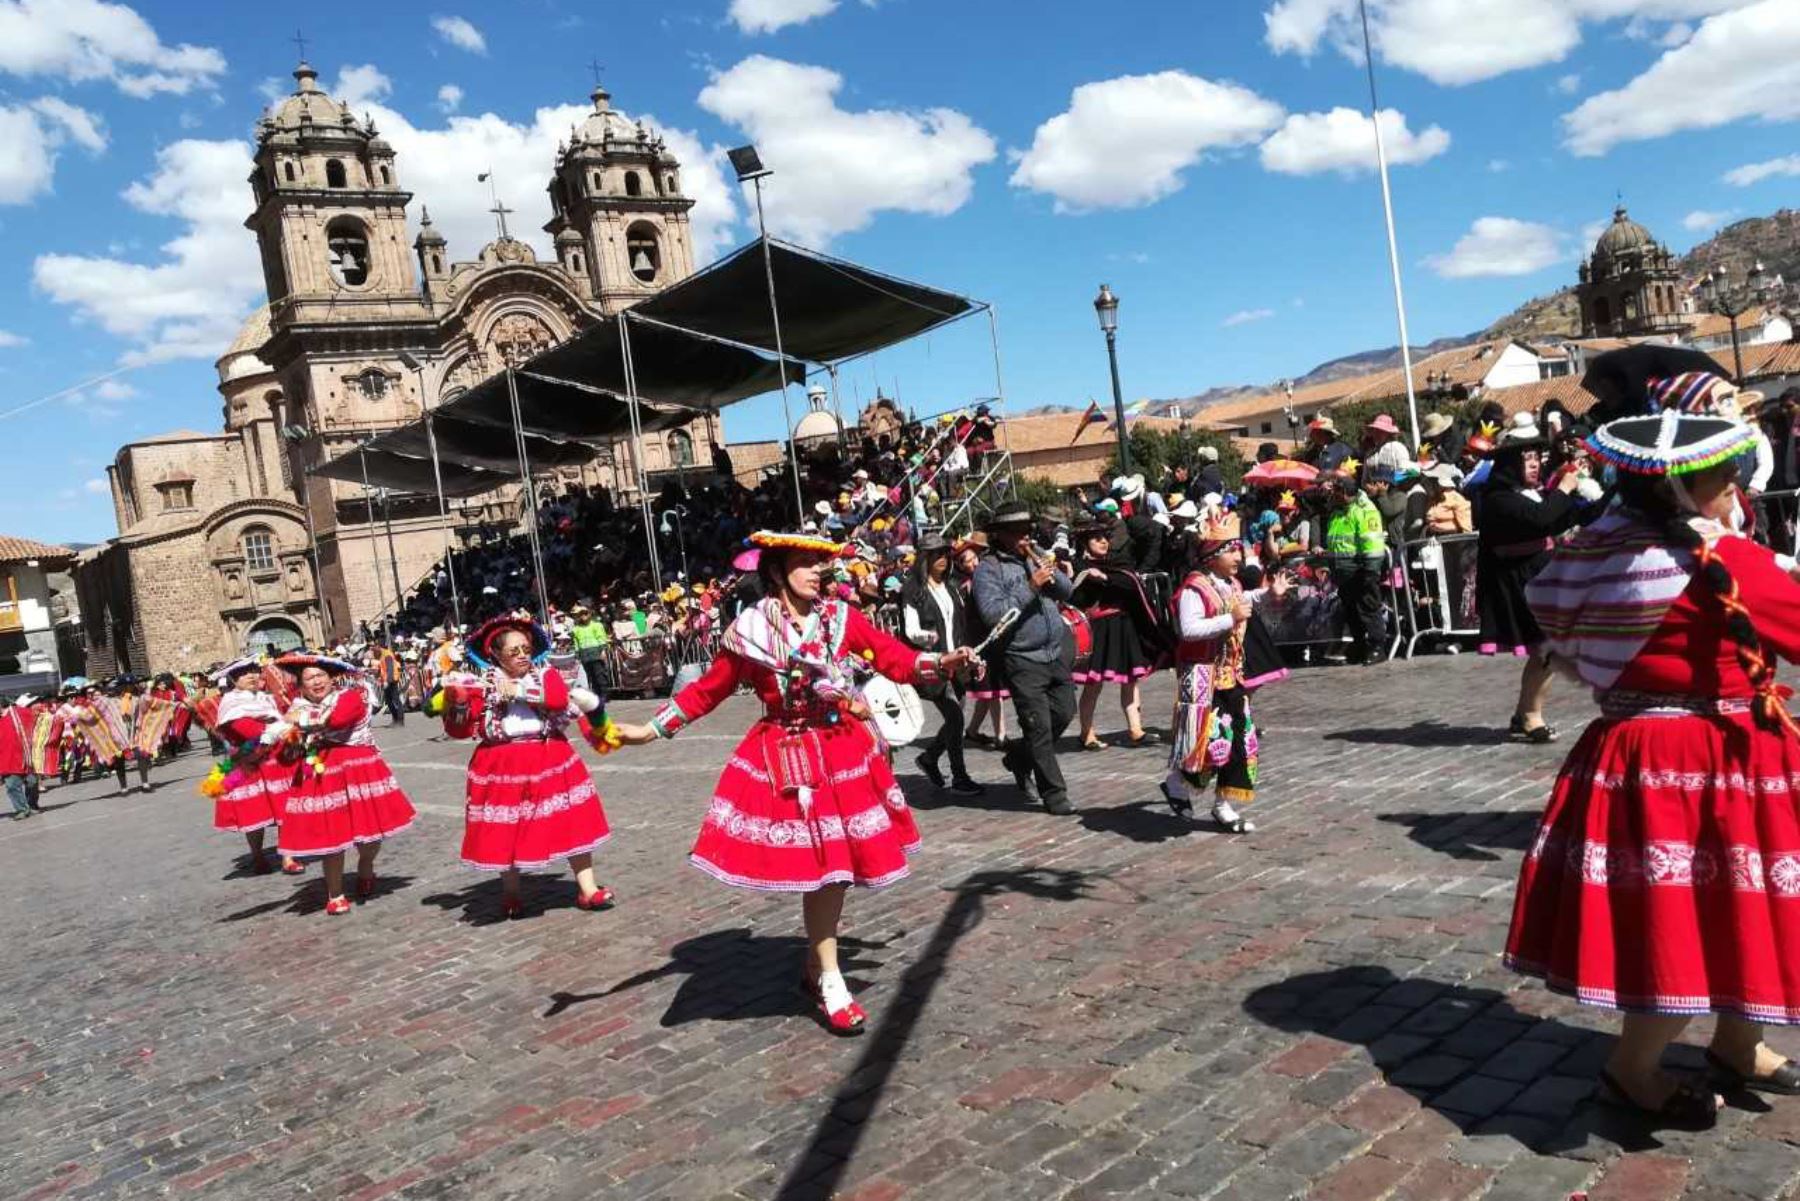 Más de 220 delegaciones de organizaciones públicas, civiles, castrenses y barriales rindieron homenaje a ritmo de música, danzas y alegorías a la ciudad del Cusco por su mes jubilar, actividad que se desarrolla en medio de gran algarabía de cusqueños y turistas.